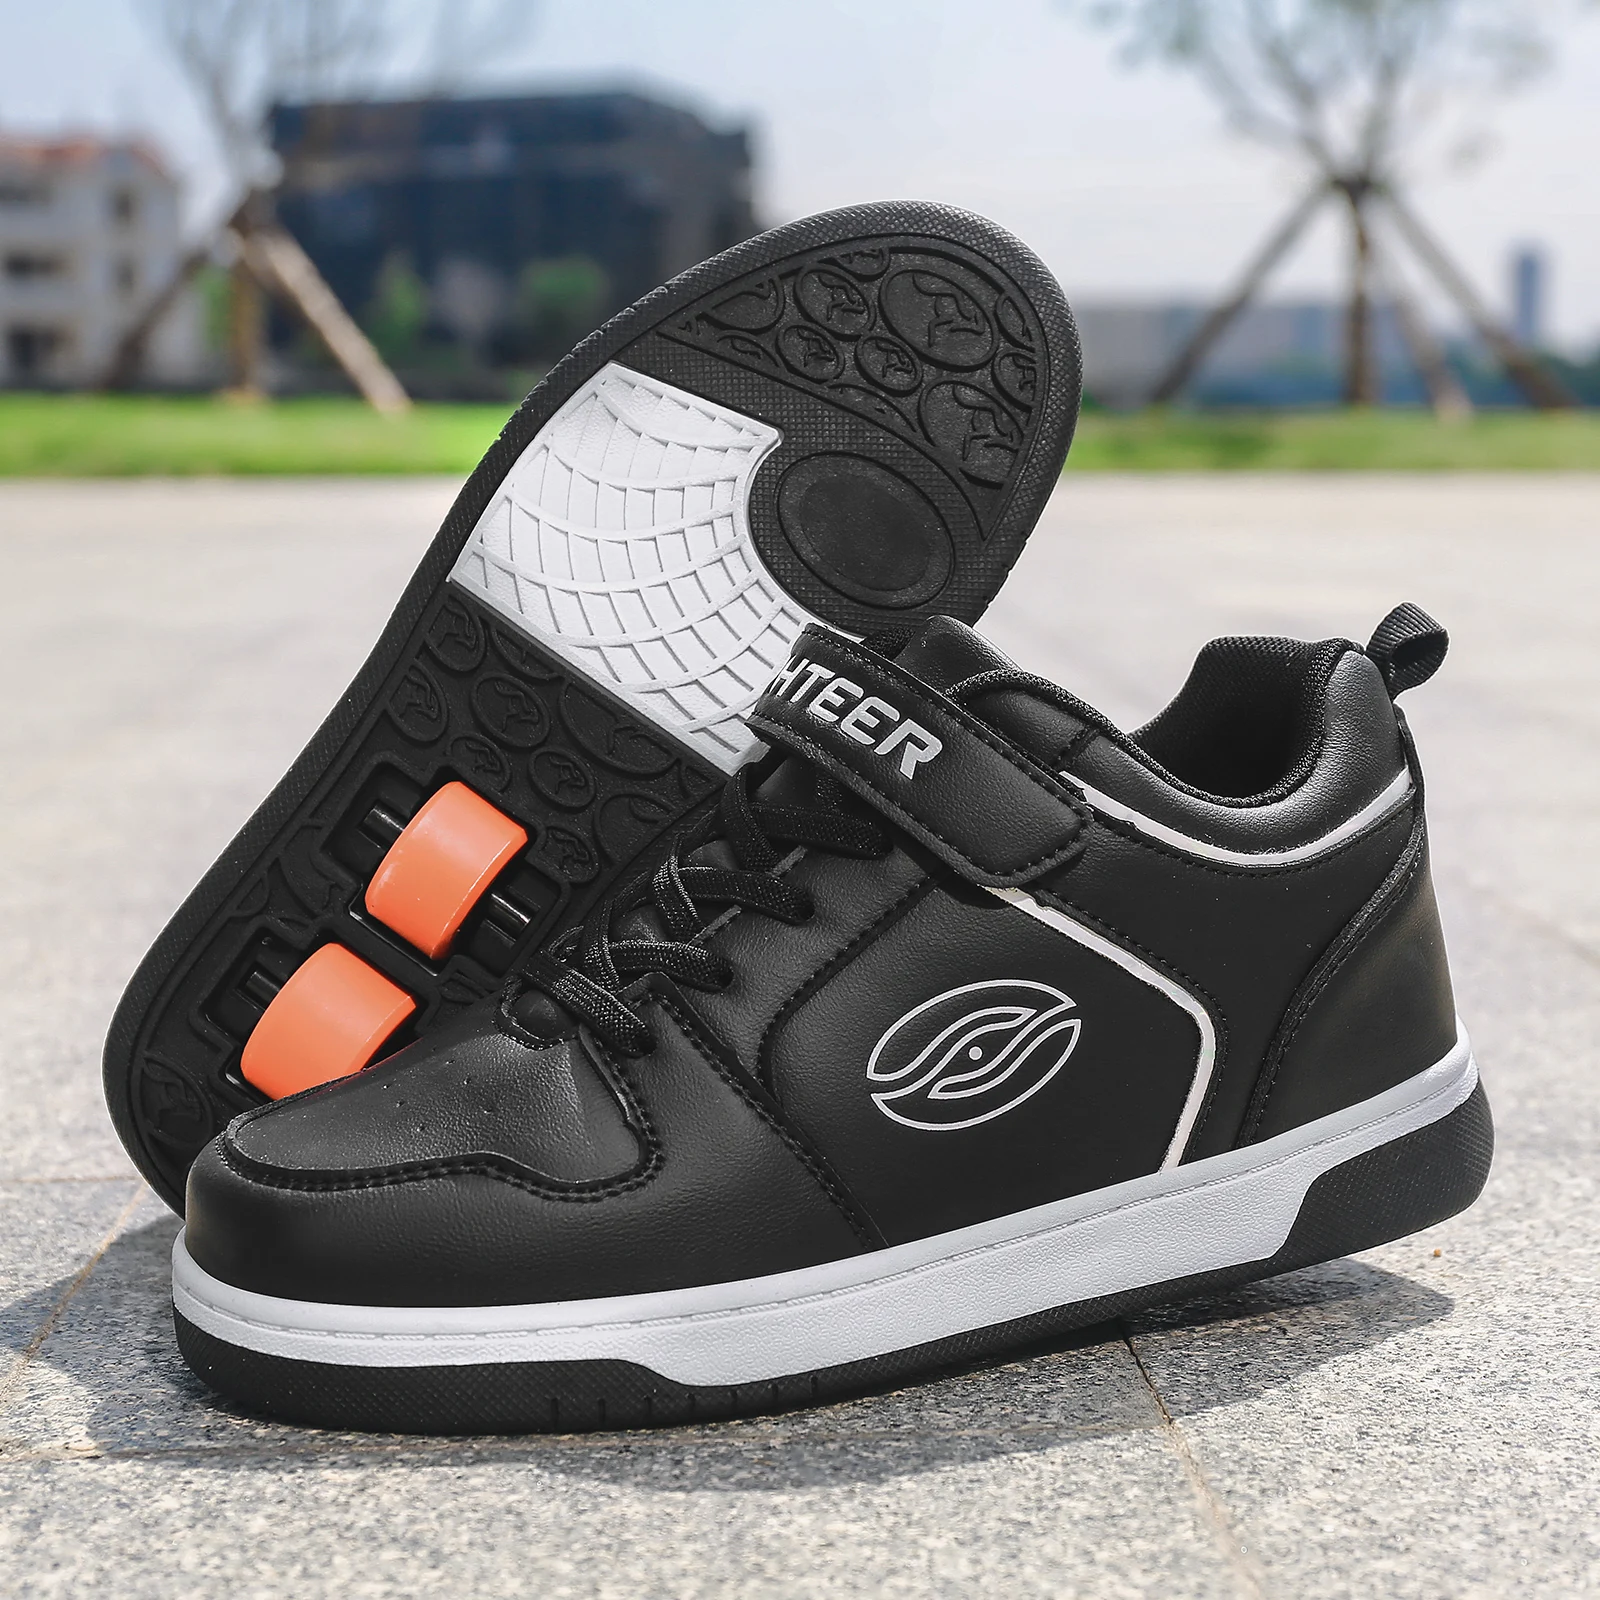 Chaussures à Roulettes Enfants - Mode Baskets - Marque - Noir